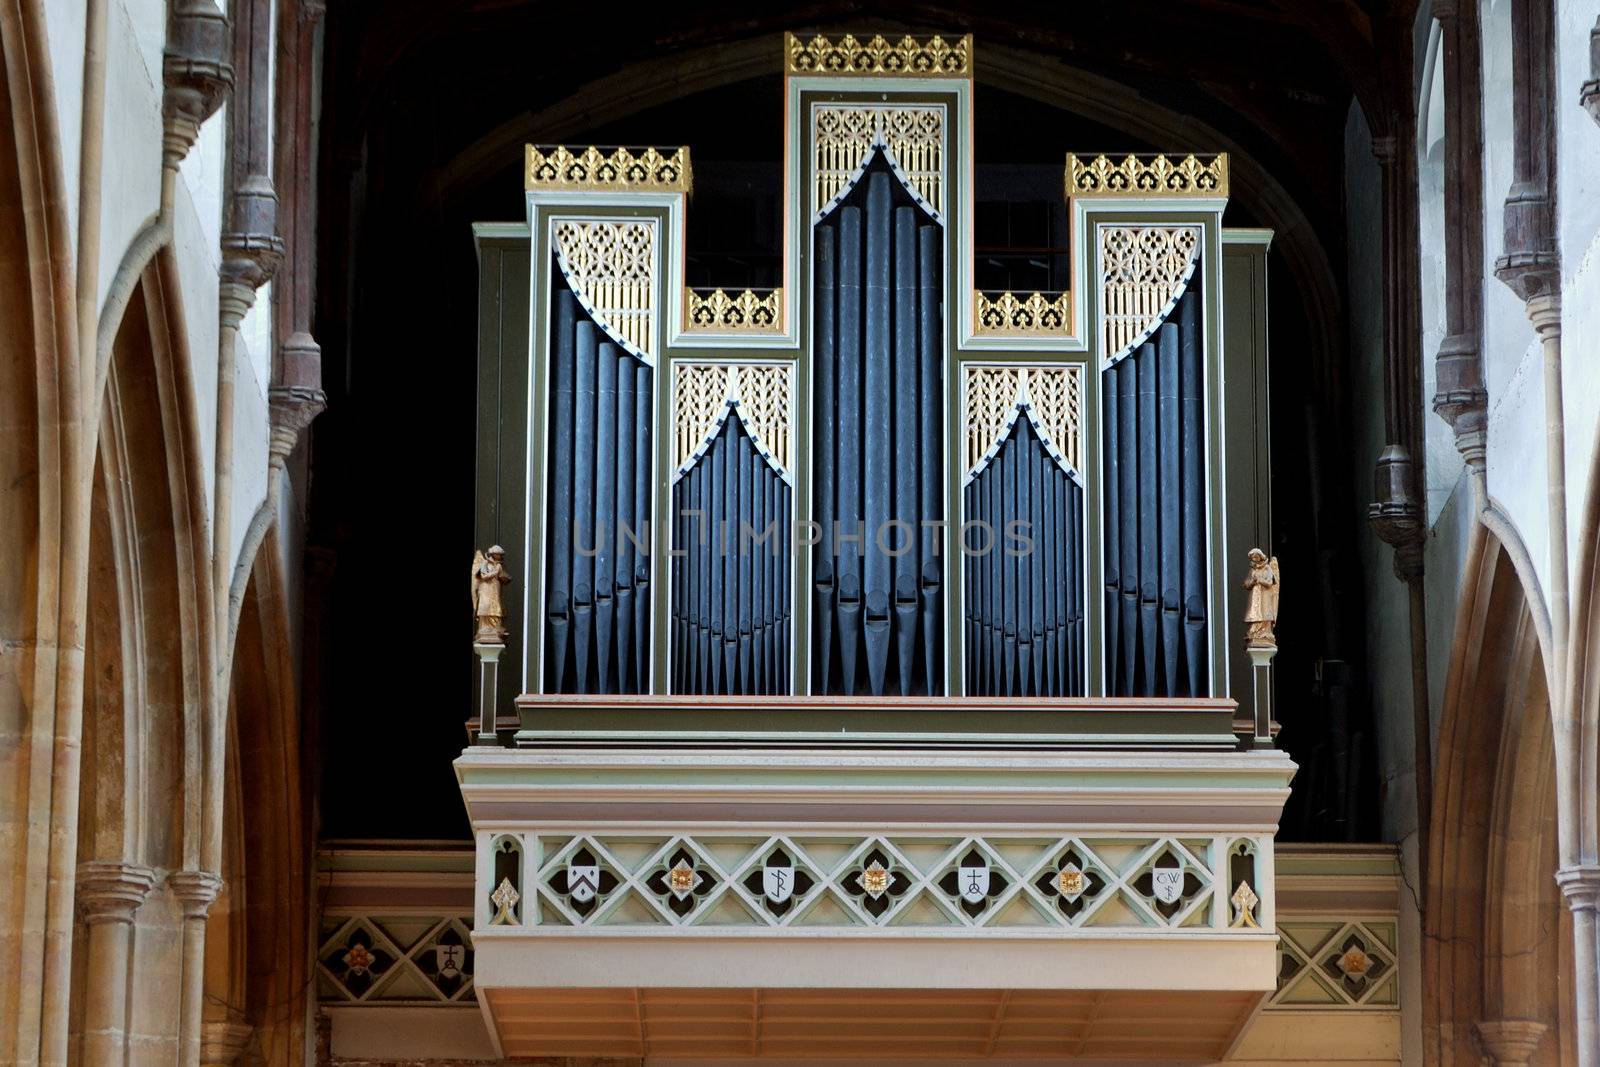 Church organ by pauws99